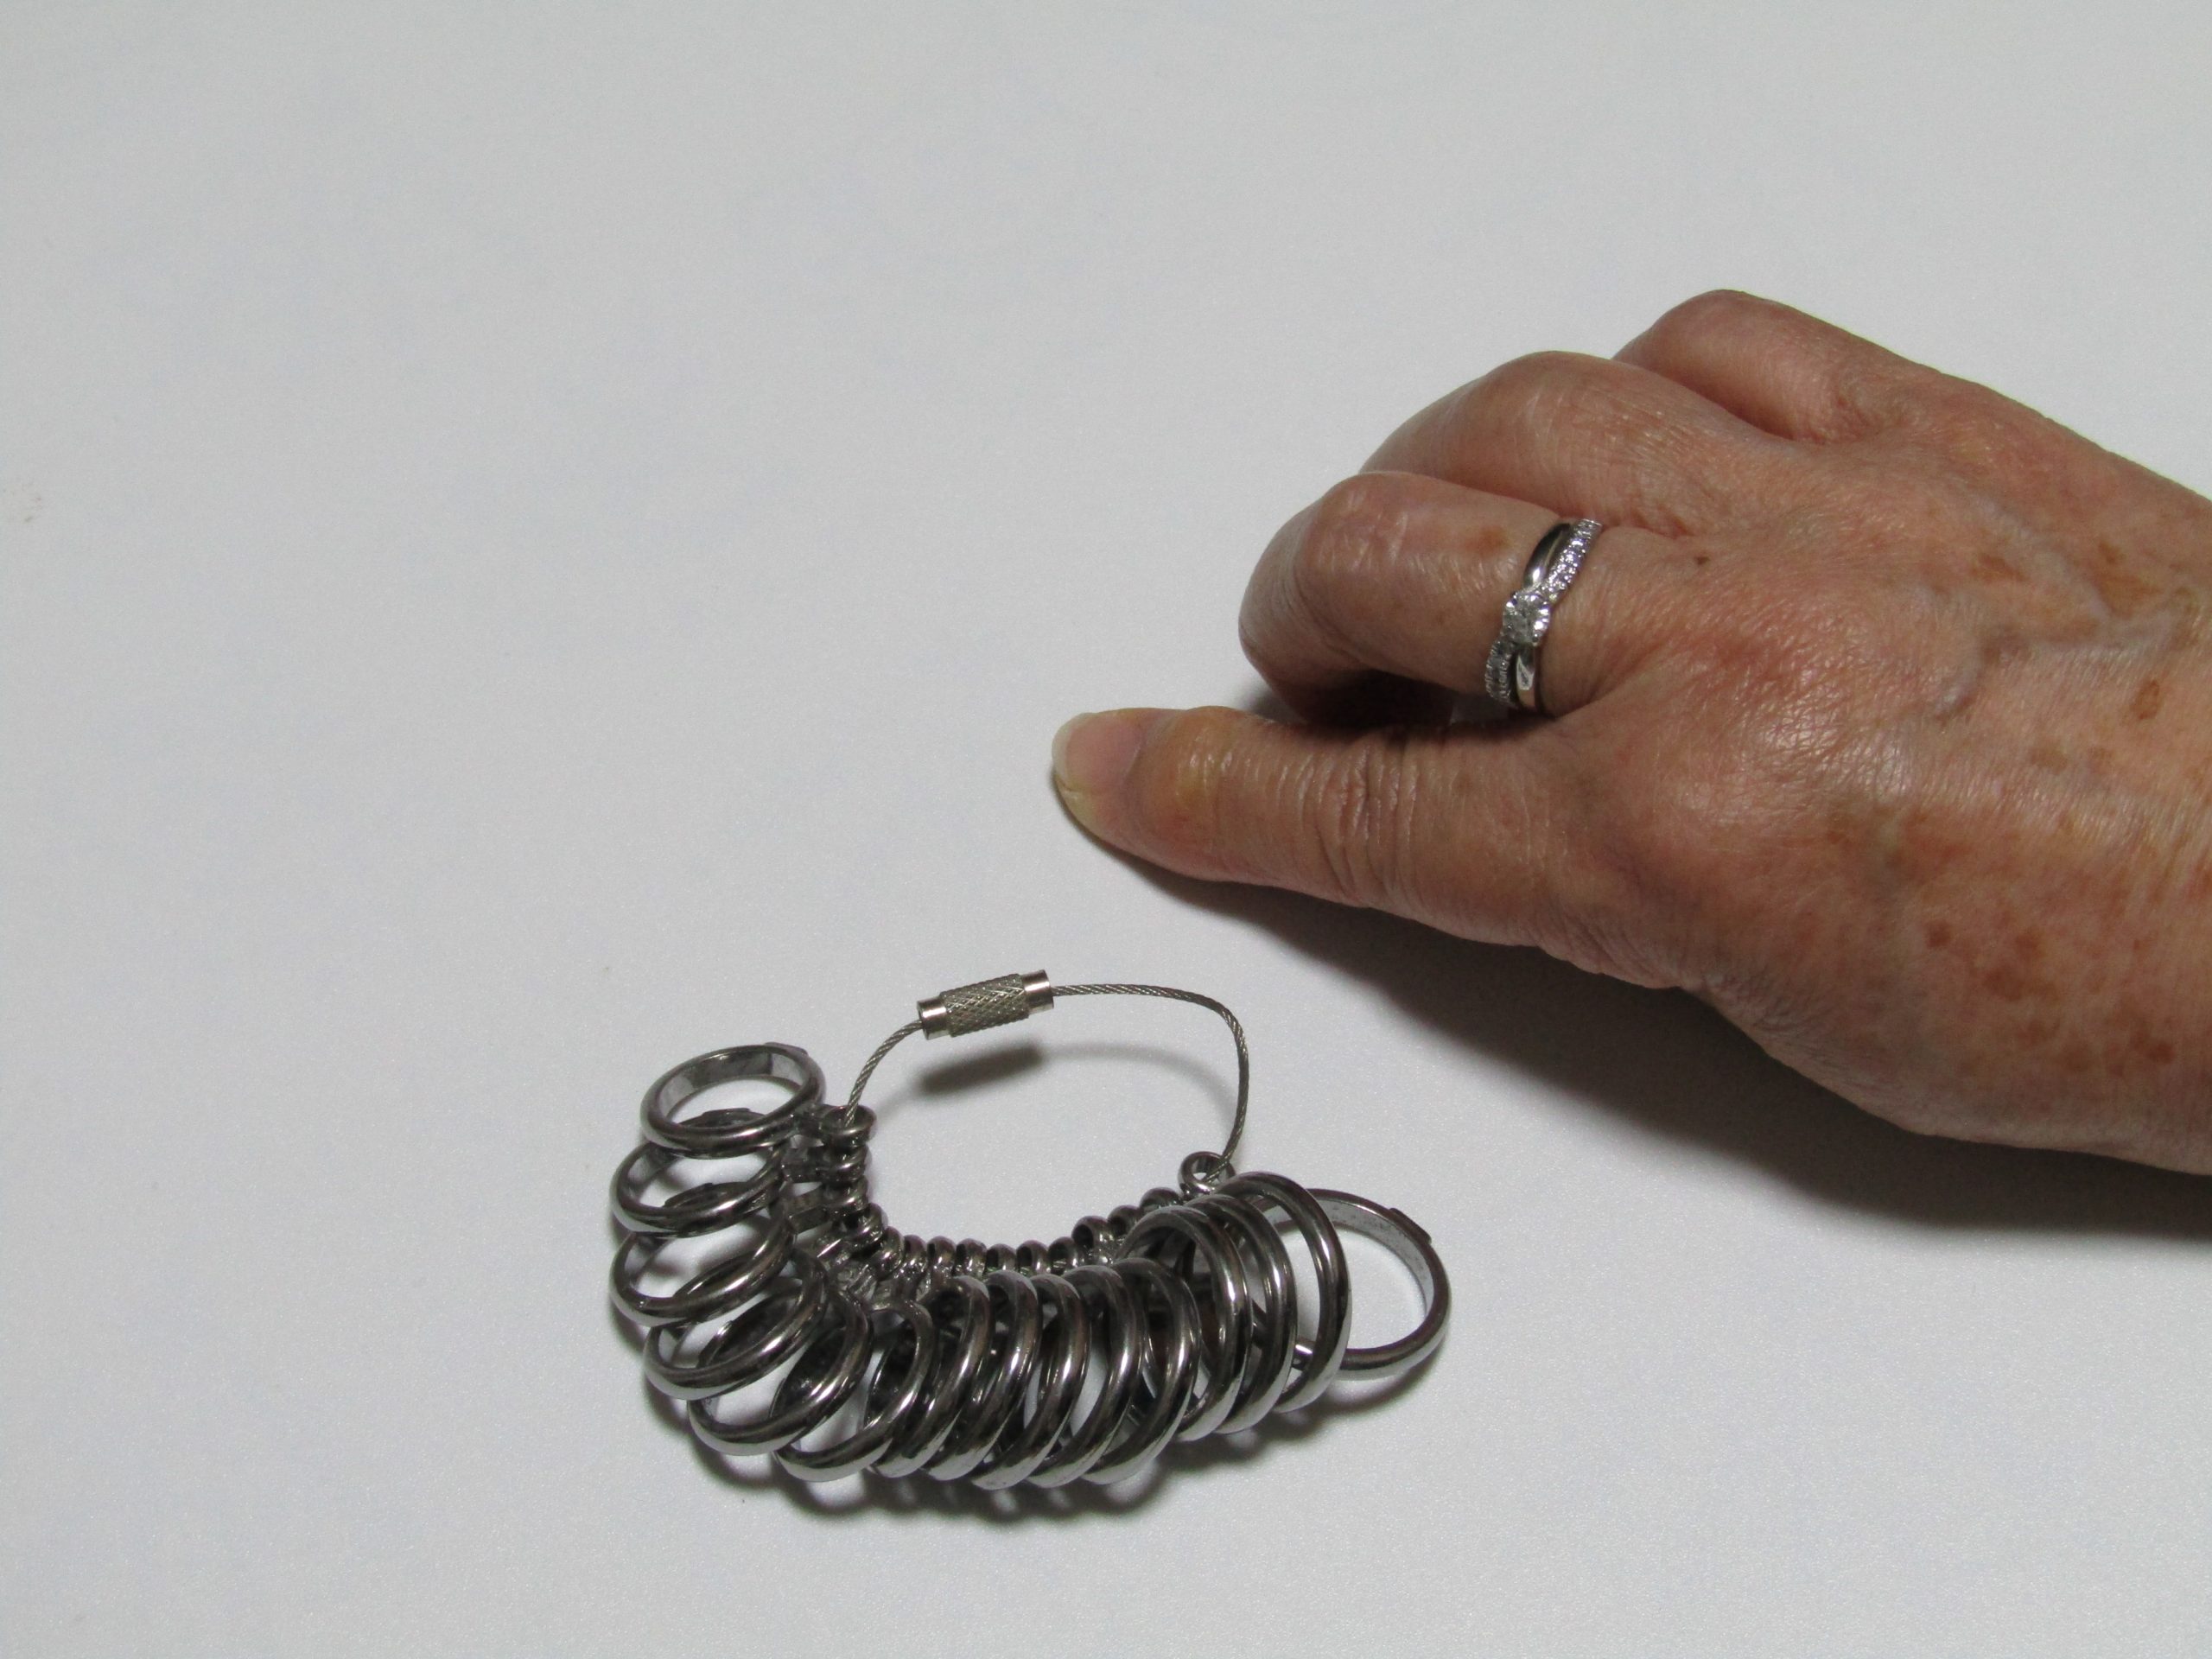 指のサイズを測るための道具［リングゲージ］と指輪をしている女性の手の写真